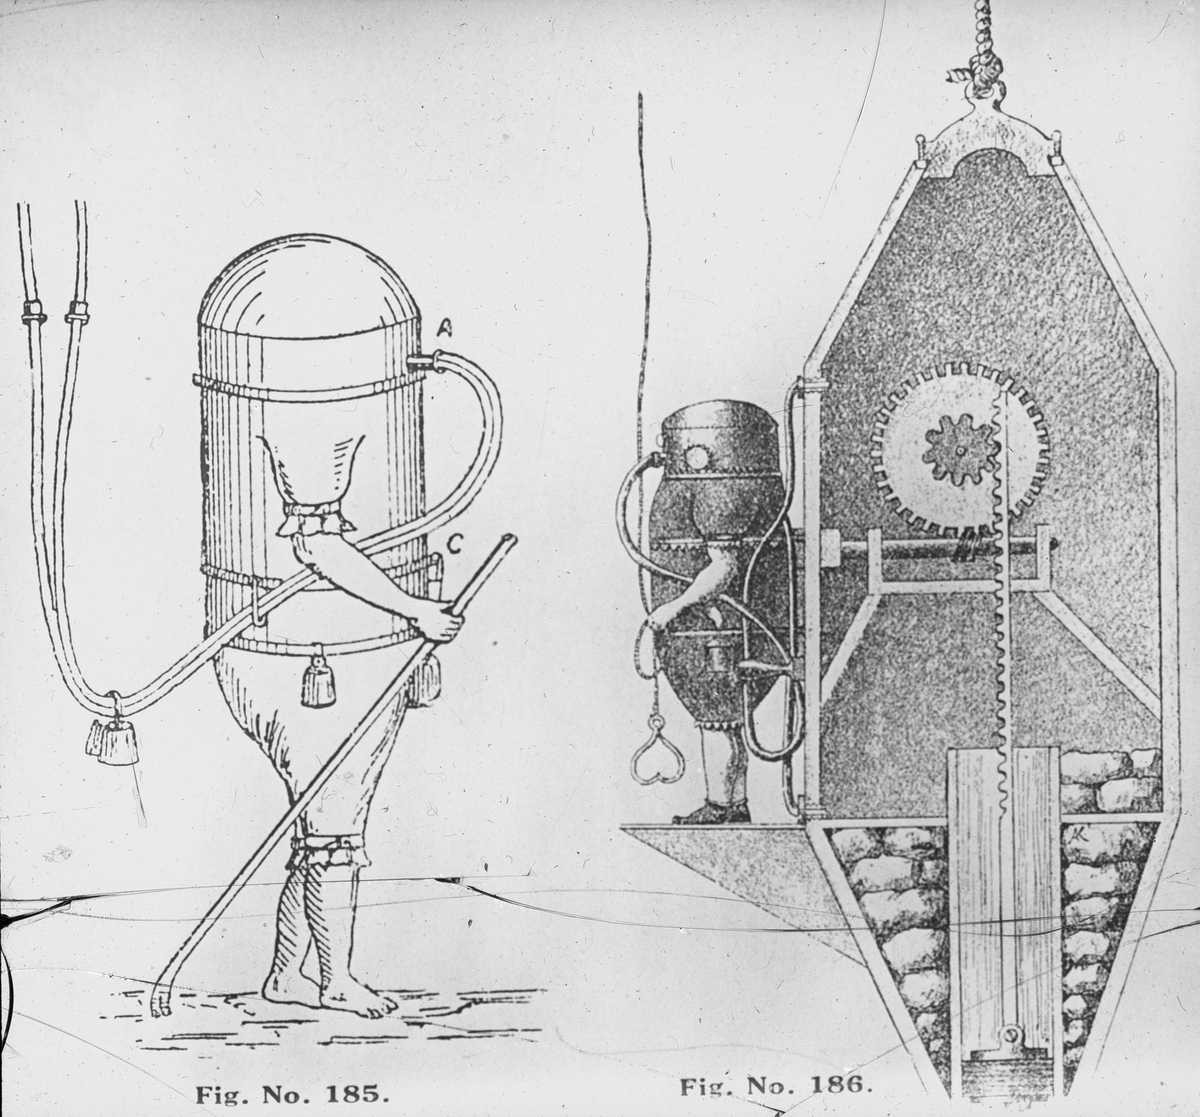 Avfotografert trykk som viser tegning av dykker og dykkerklokke, ant. 1700-1800-tallet.